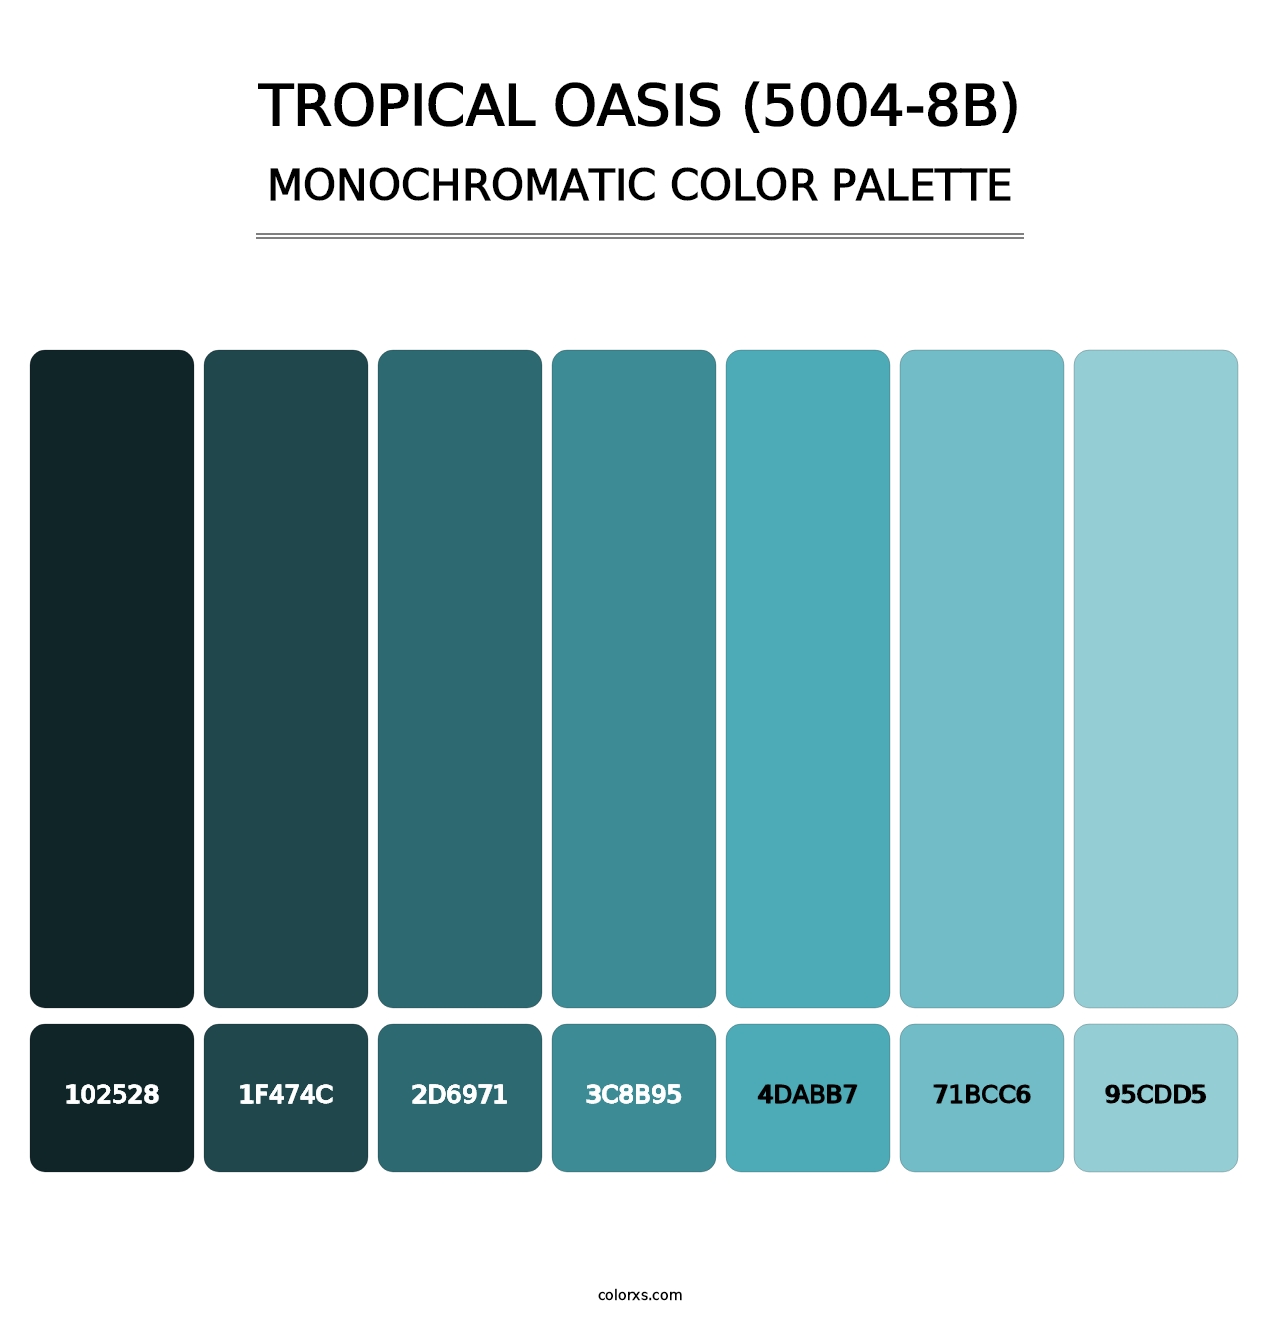 Tropical Oasis (5004-8B) - Monochromatic Color Palette